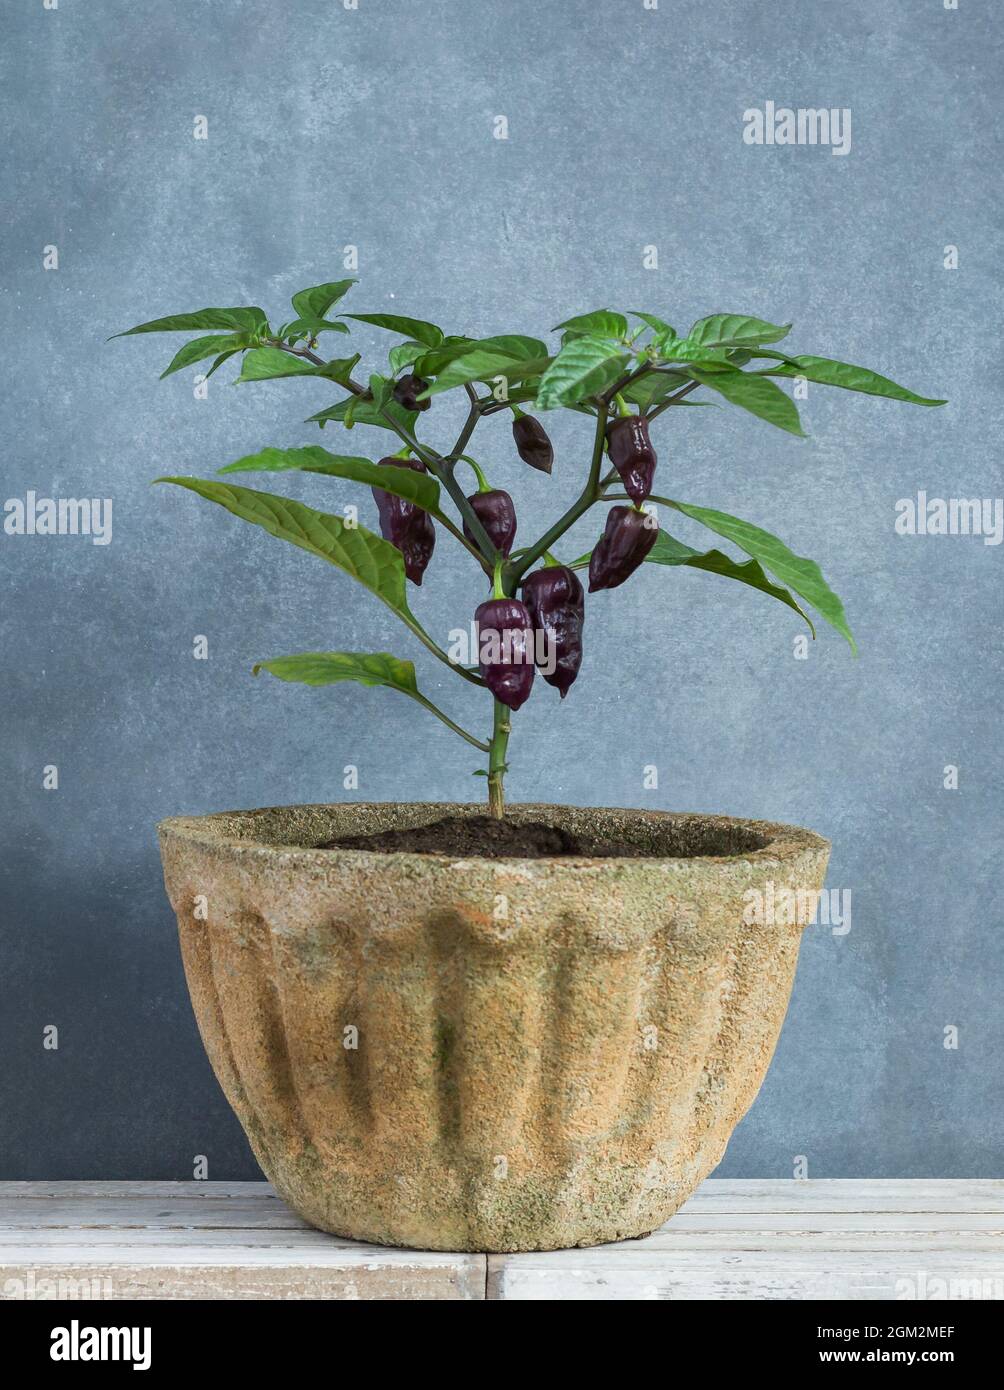 la plante de piment habanero, de piment de la plus chaude avec des piments violets cultivés dans un contenant de ciment ou une casserole dans le jardin à la maison, cultivant des légumes Banque D'Images